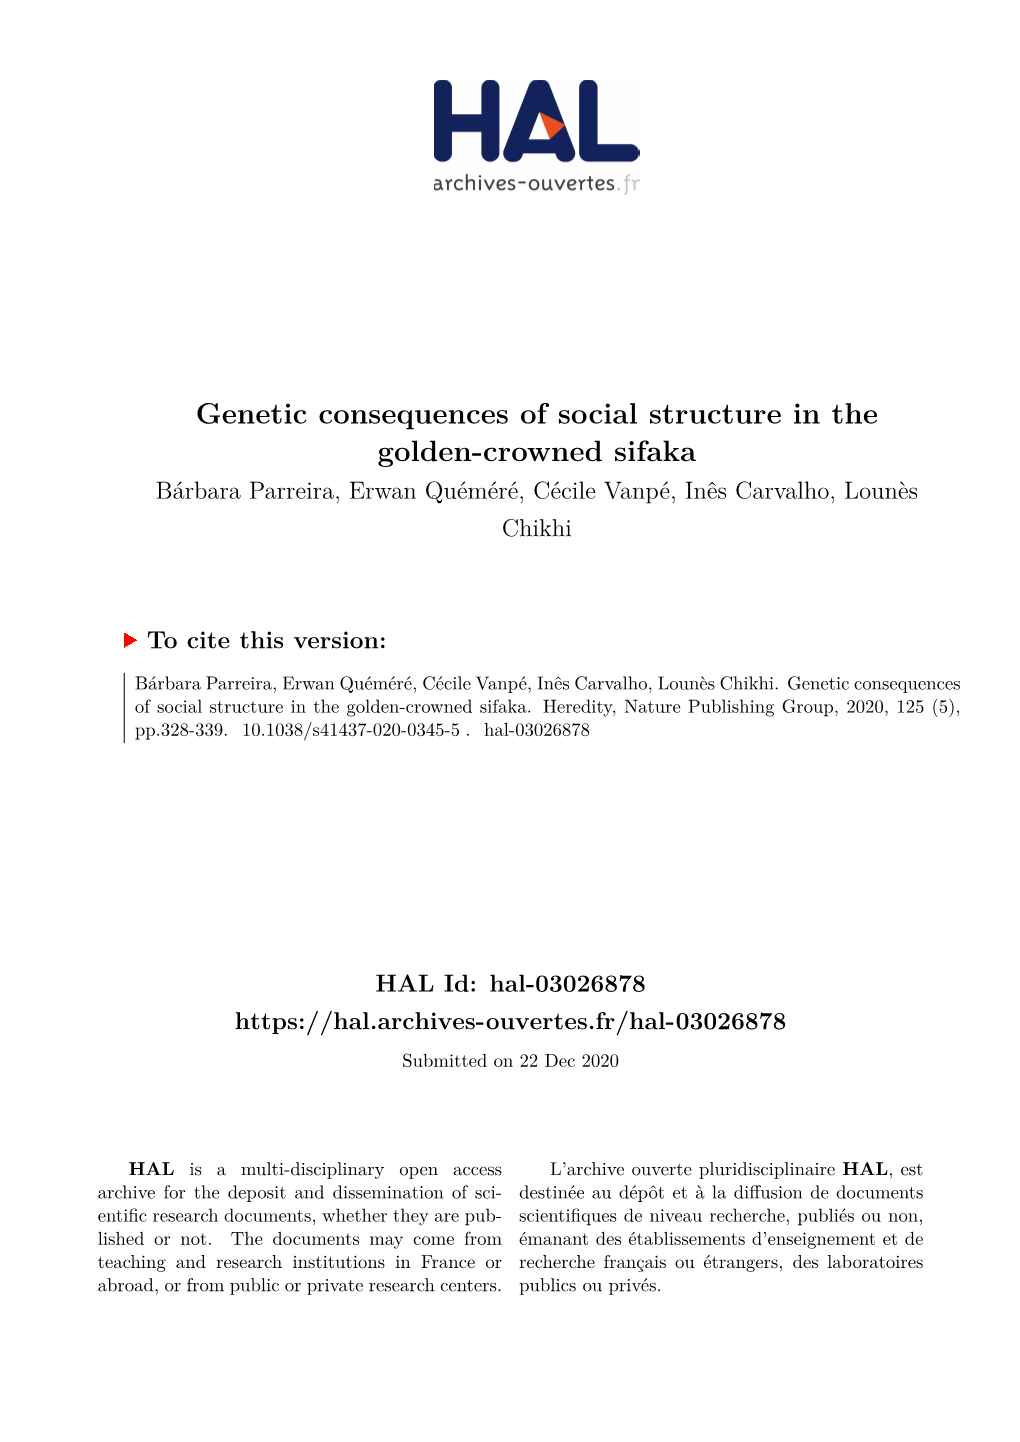 Genetic Consequences of Social Structure in the Golden-Crowned Sifaka Bárbara Parreira, Erwan Quéméré, Cécile Vanpé, Inês Carvalho, Lounès Chikhi